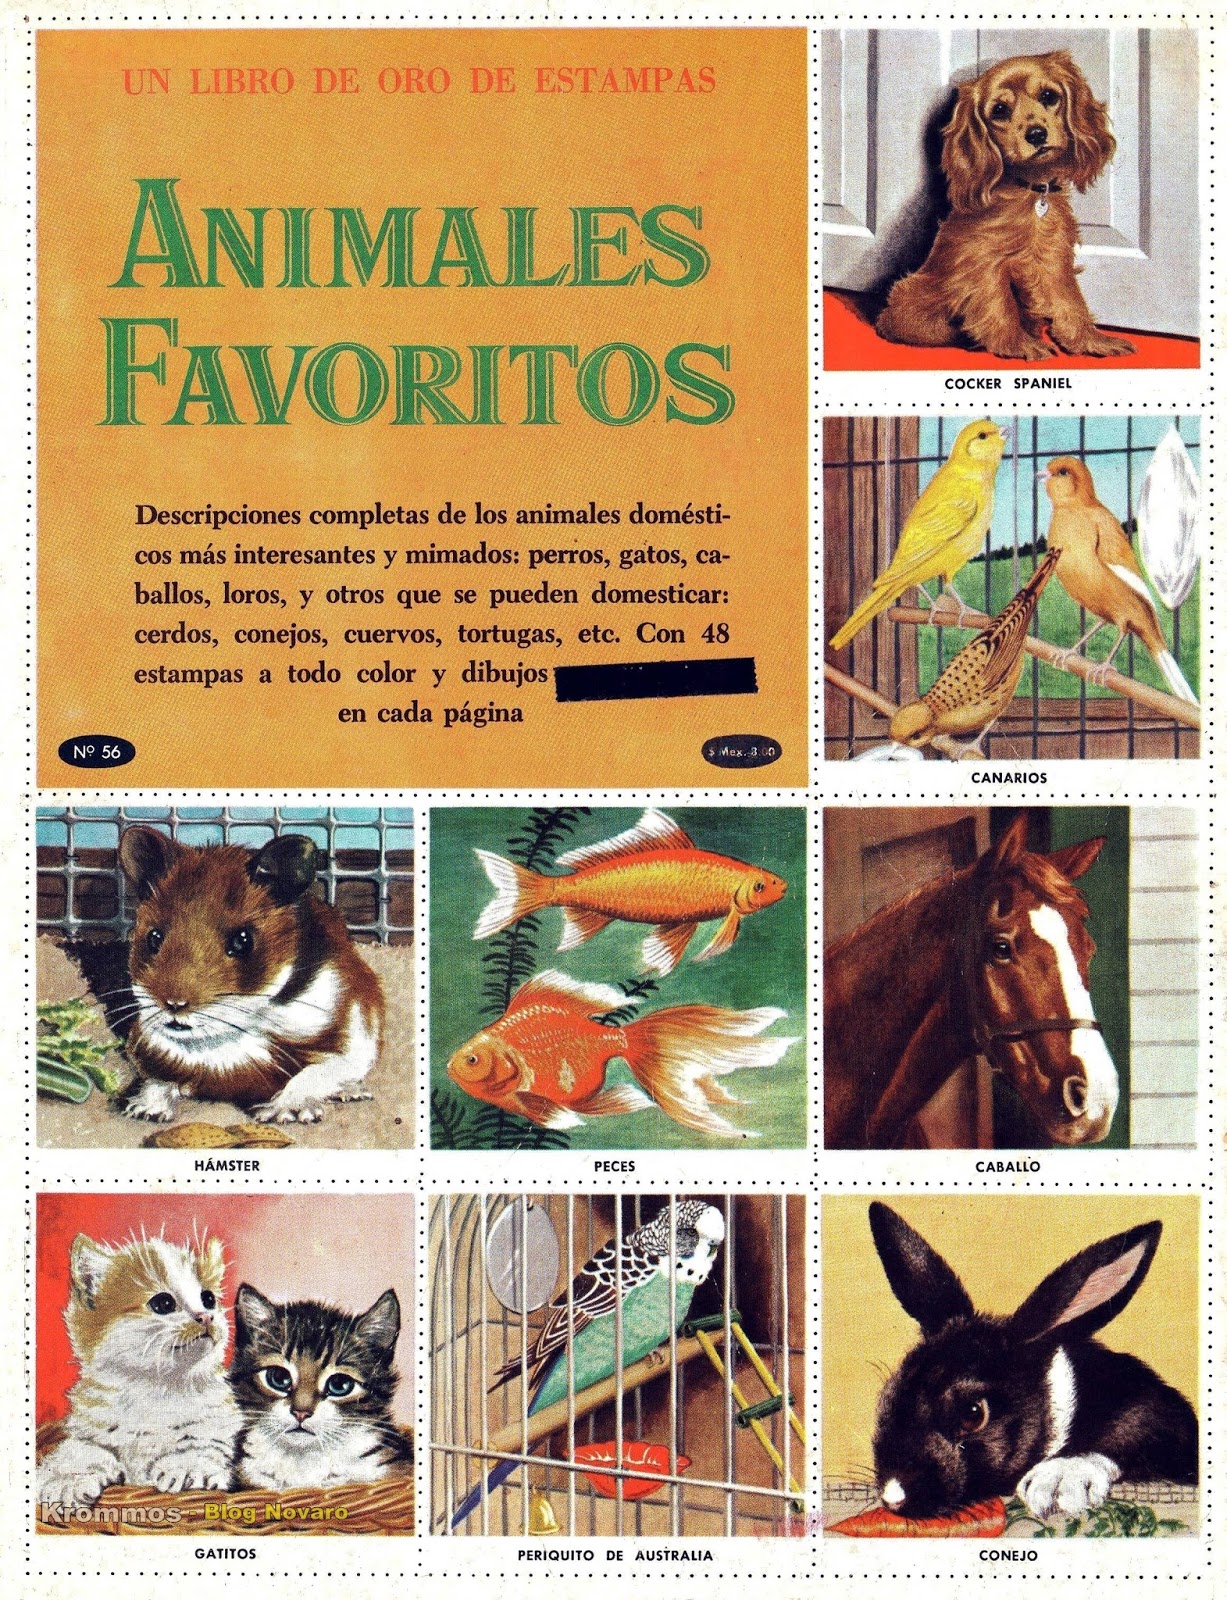 LIBRO DE ORO DE ANIMALES FAVORITOS